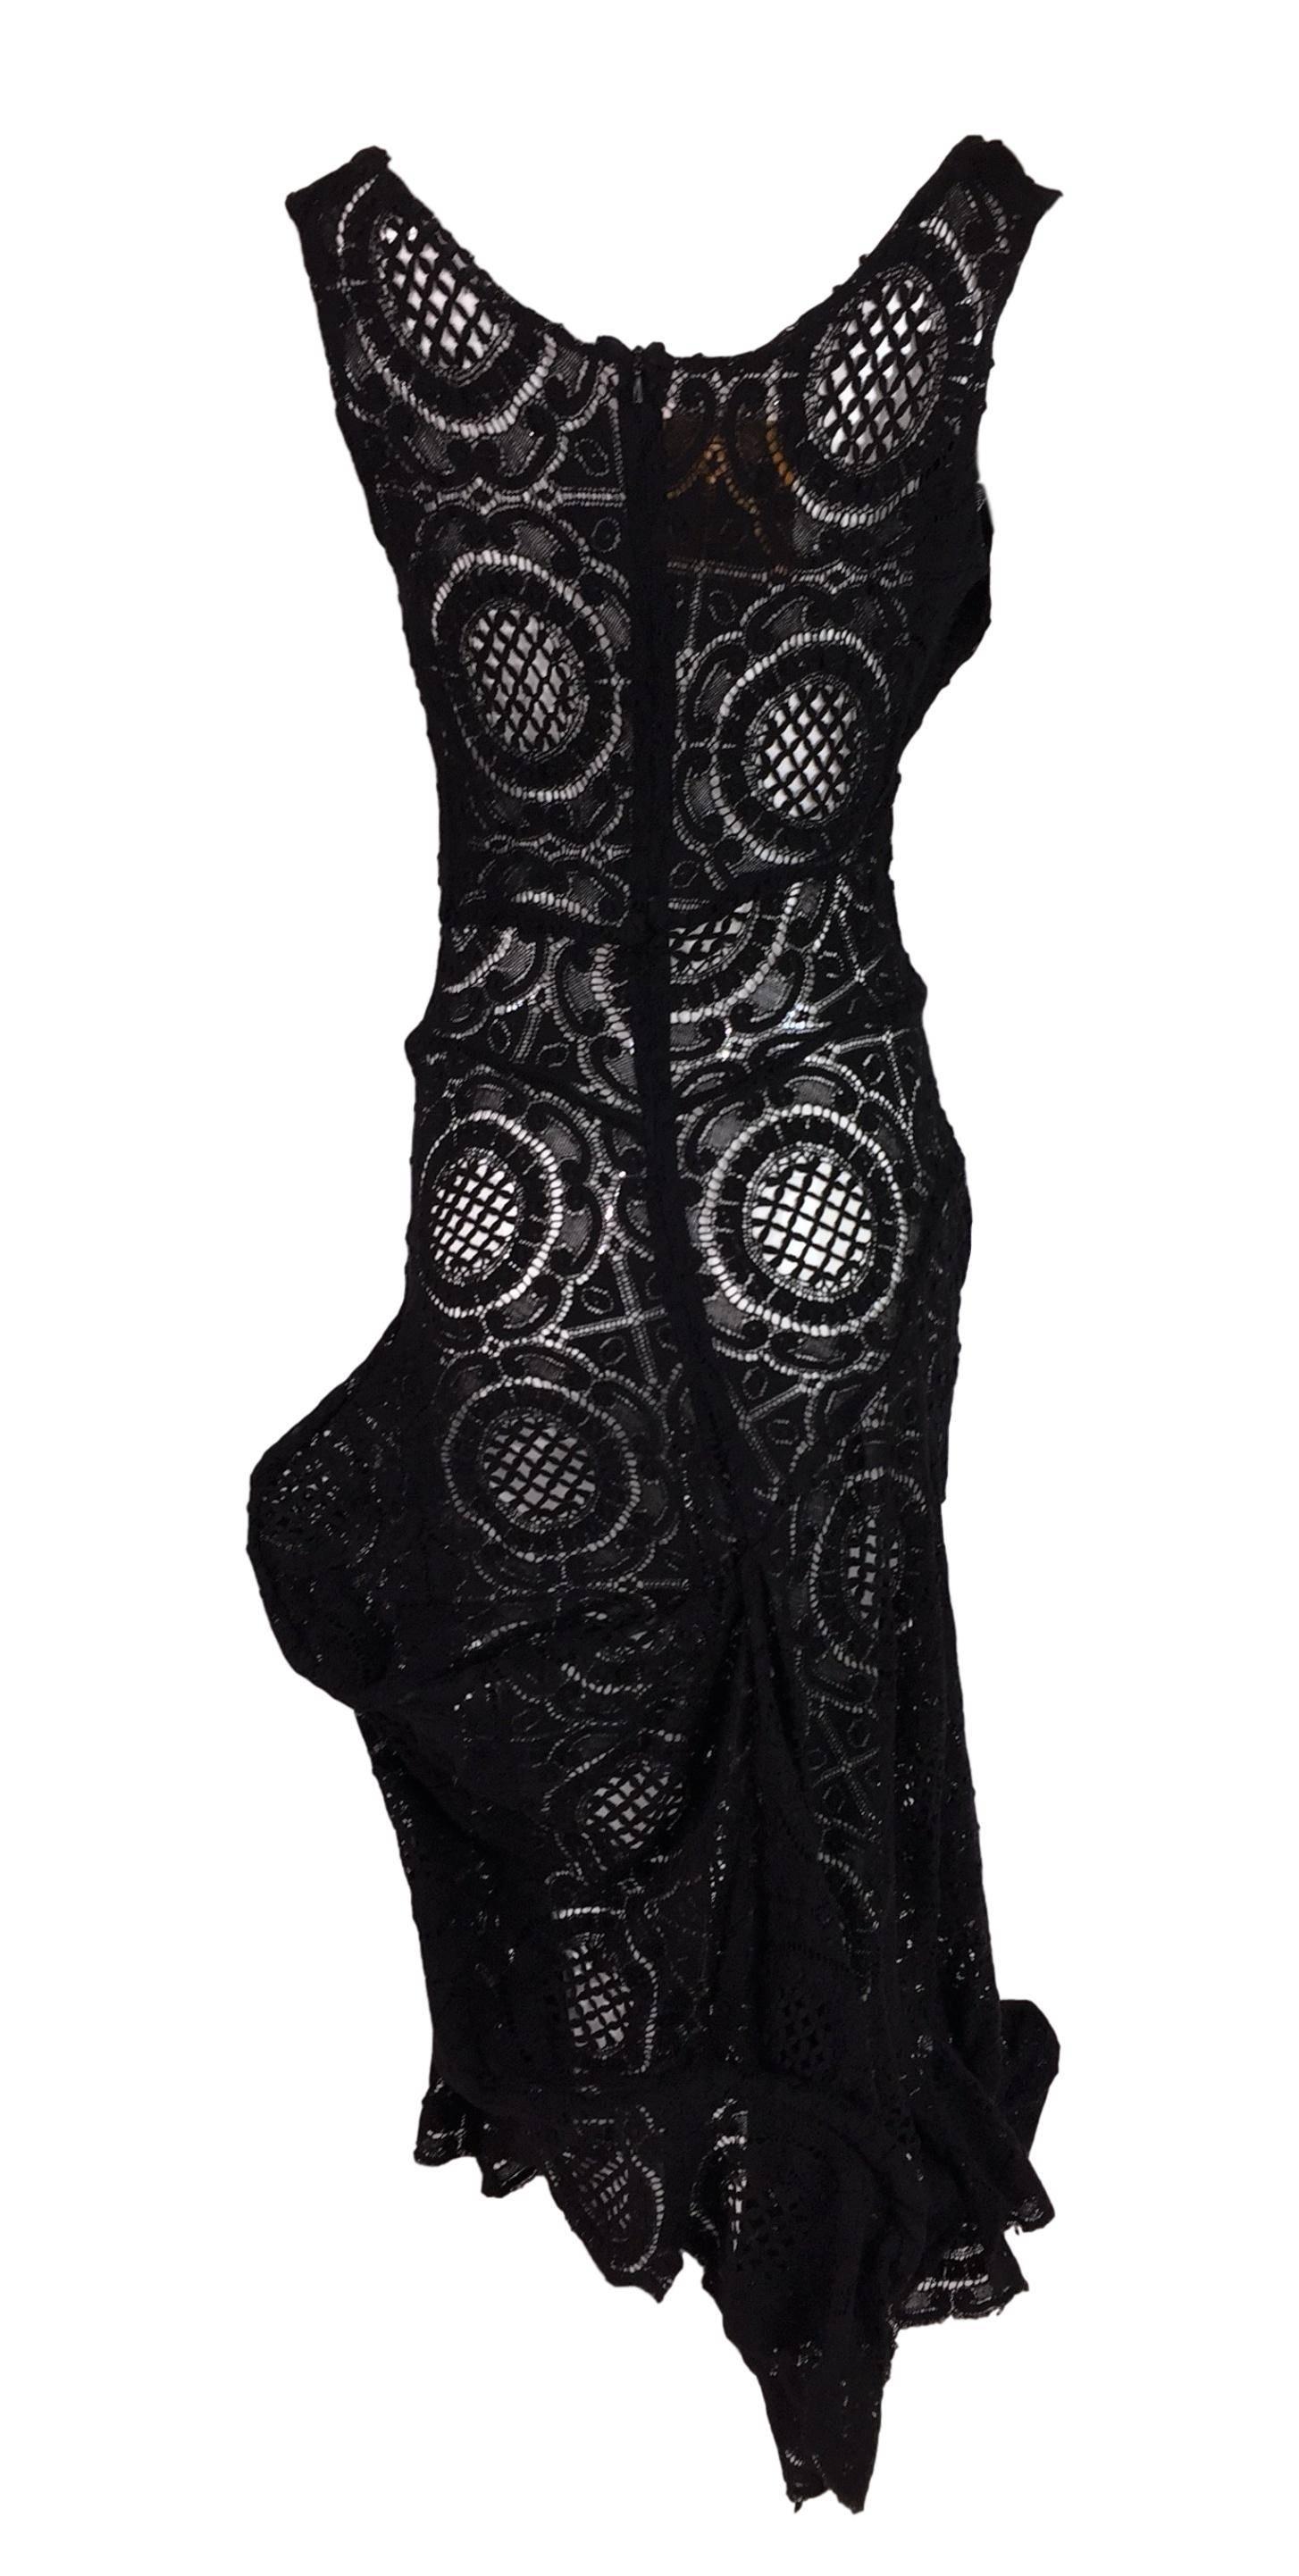 S/S 2002 Vivienne Westwood Couture OOAK Sheer Black Avant Garde Dress 2